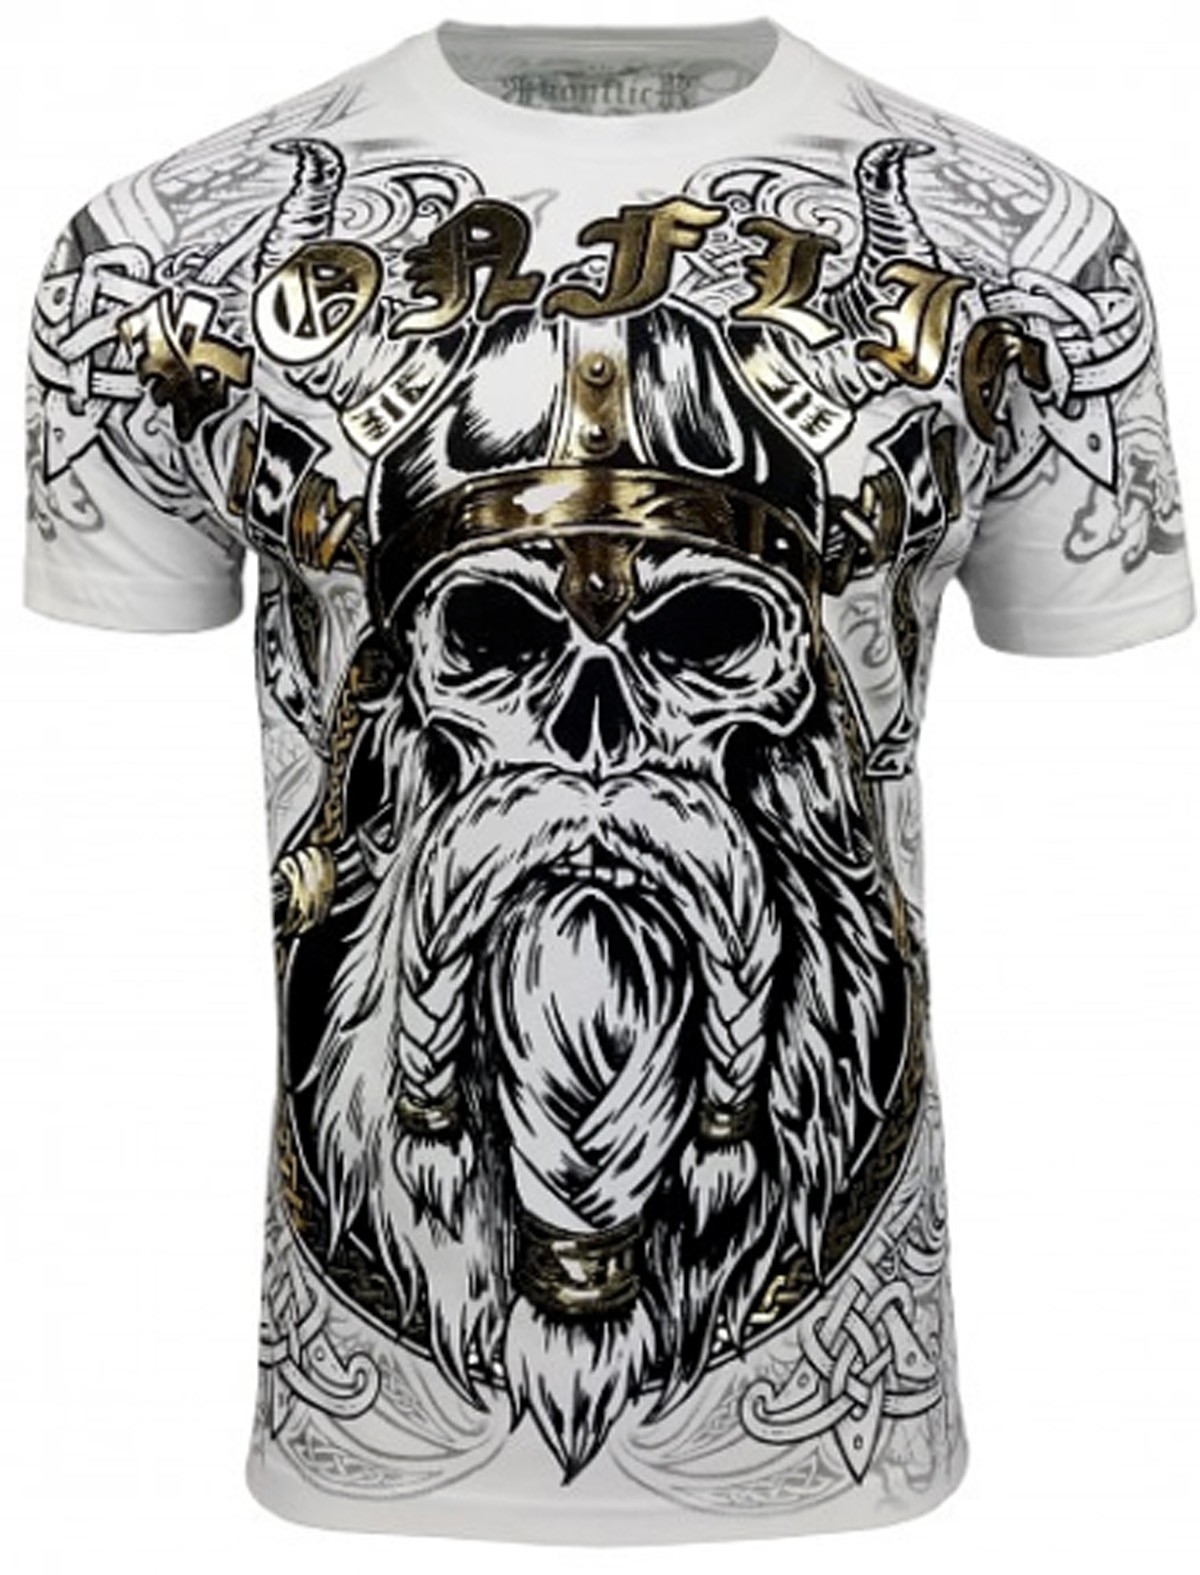 Konflic Clothing - Bearded T-Shirt